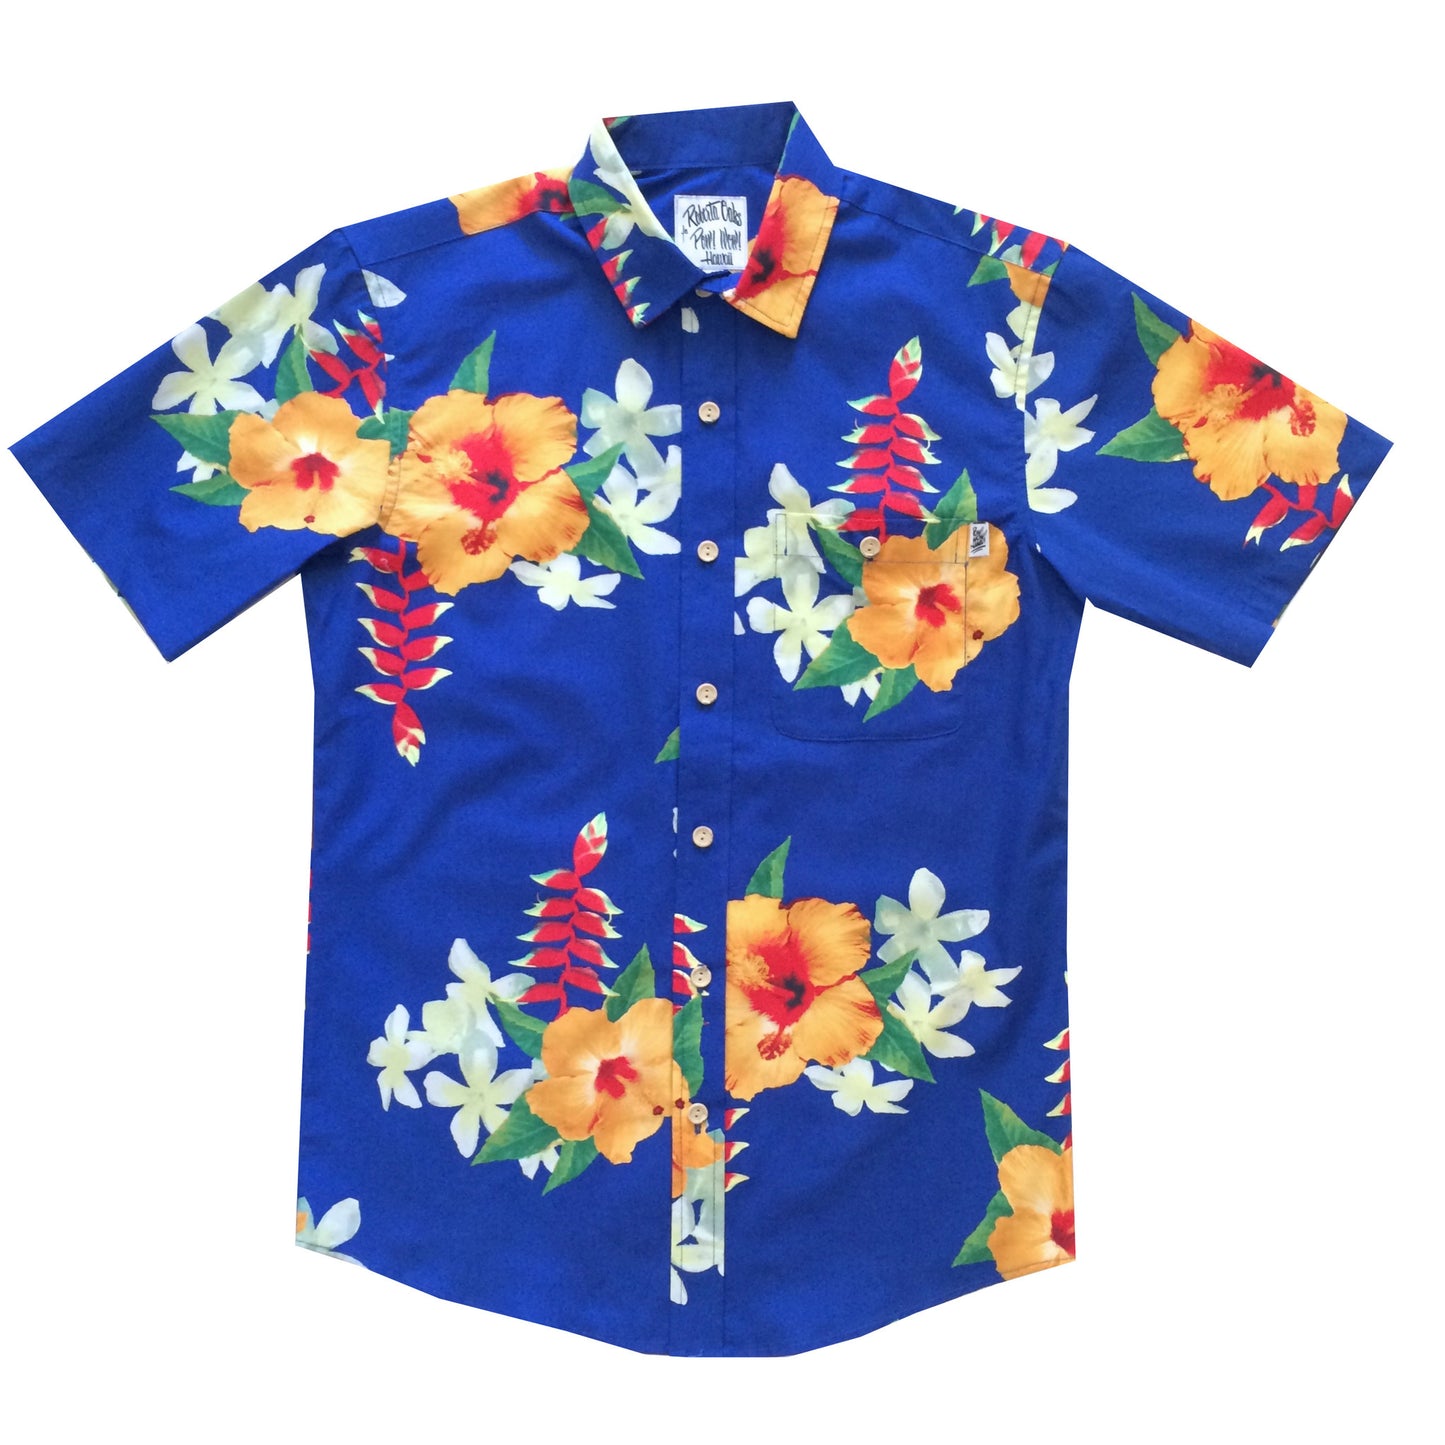 Pow! Wow! Hawaii 2016 Halekauwila Shirt - SOLD OUT